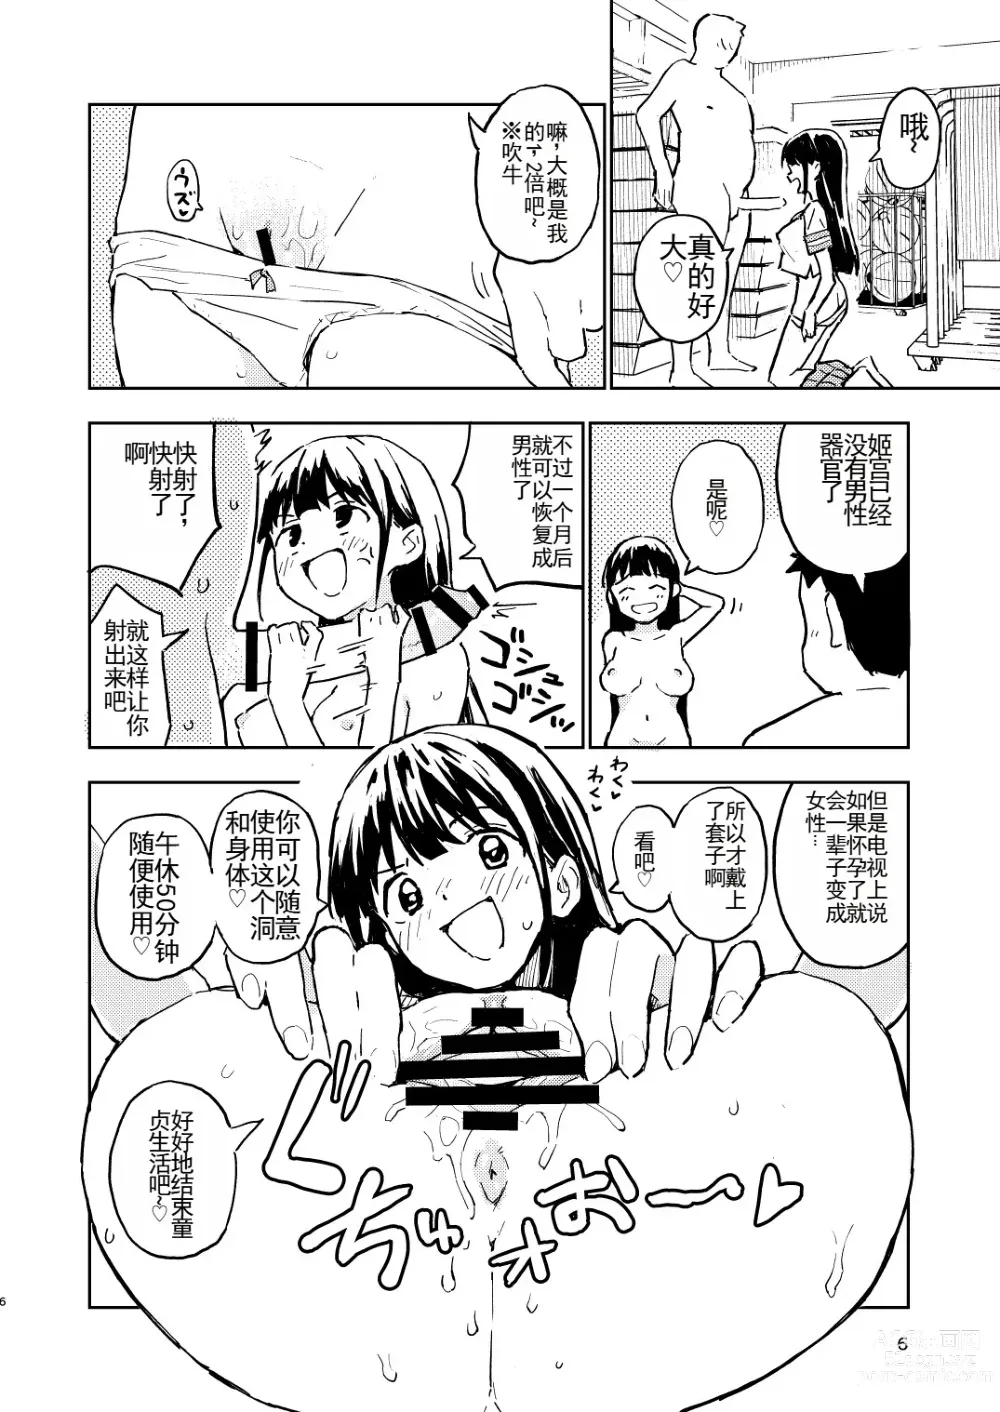 Page 6 of doujinshi 1-kagetsu Ninshin Shinakereba Otoko ni Modoreru Hanashi